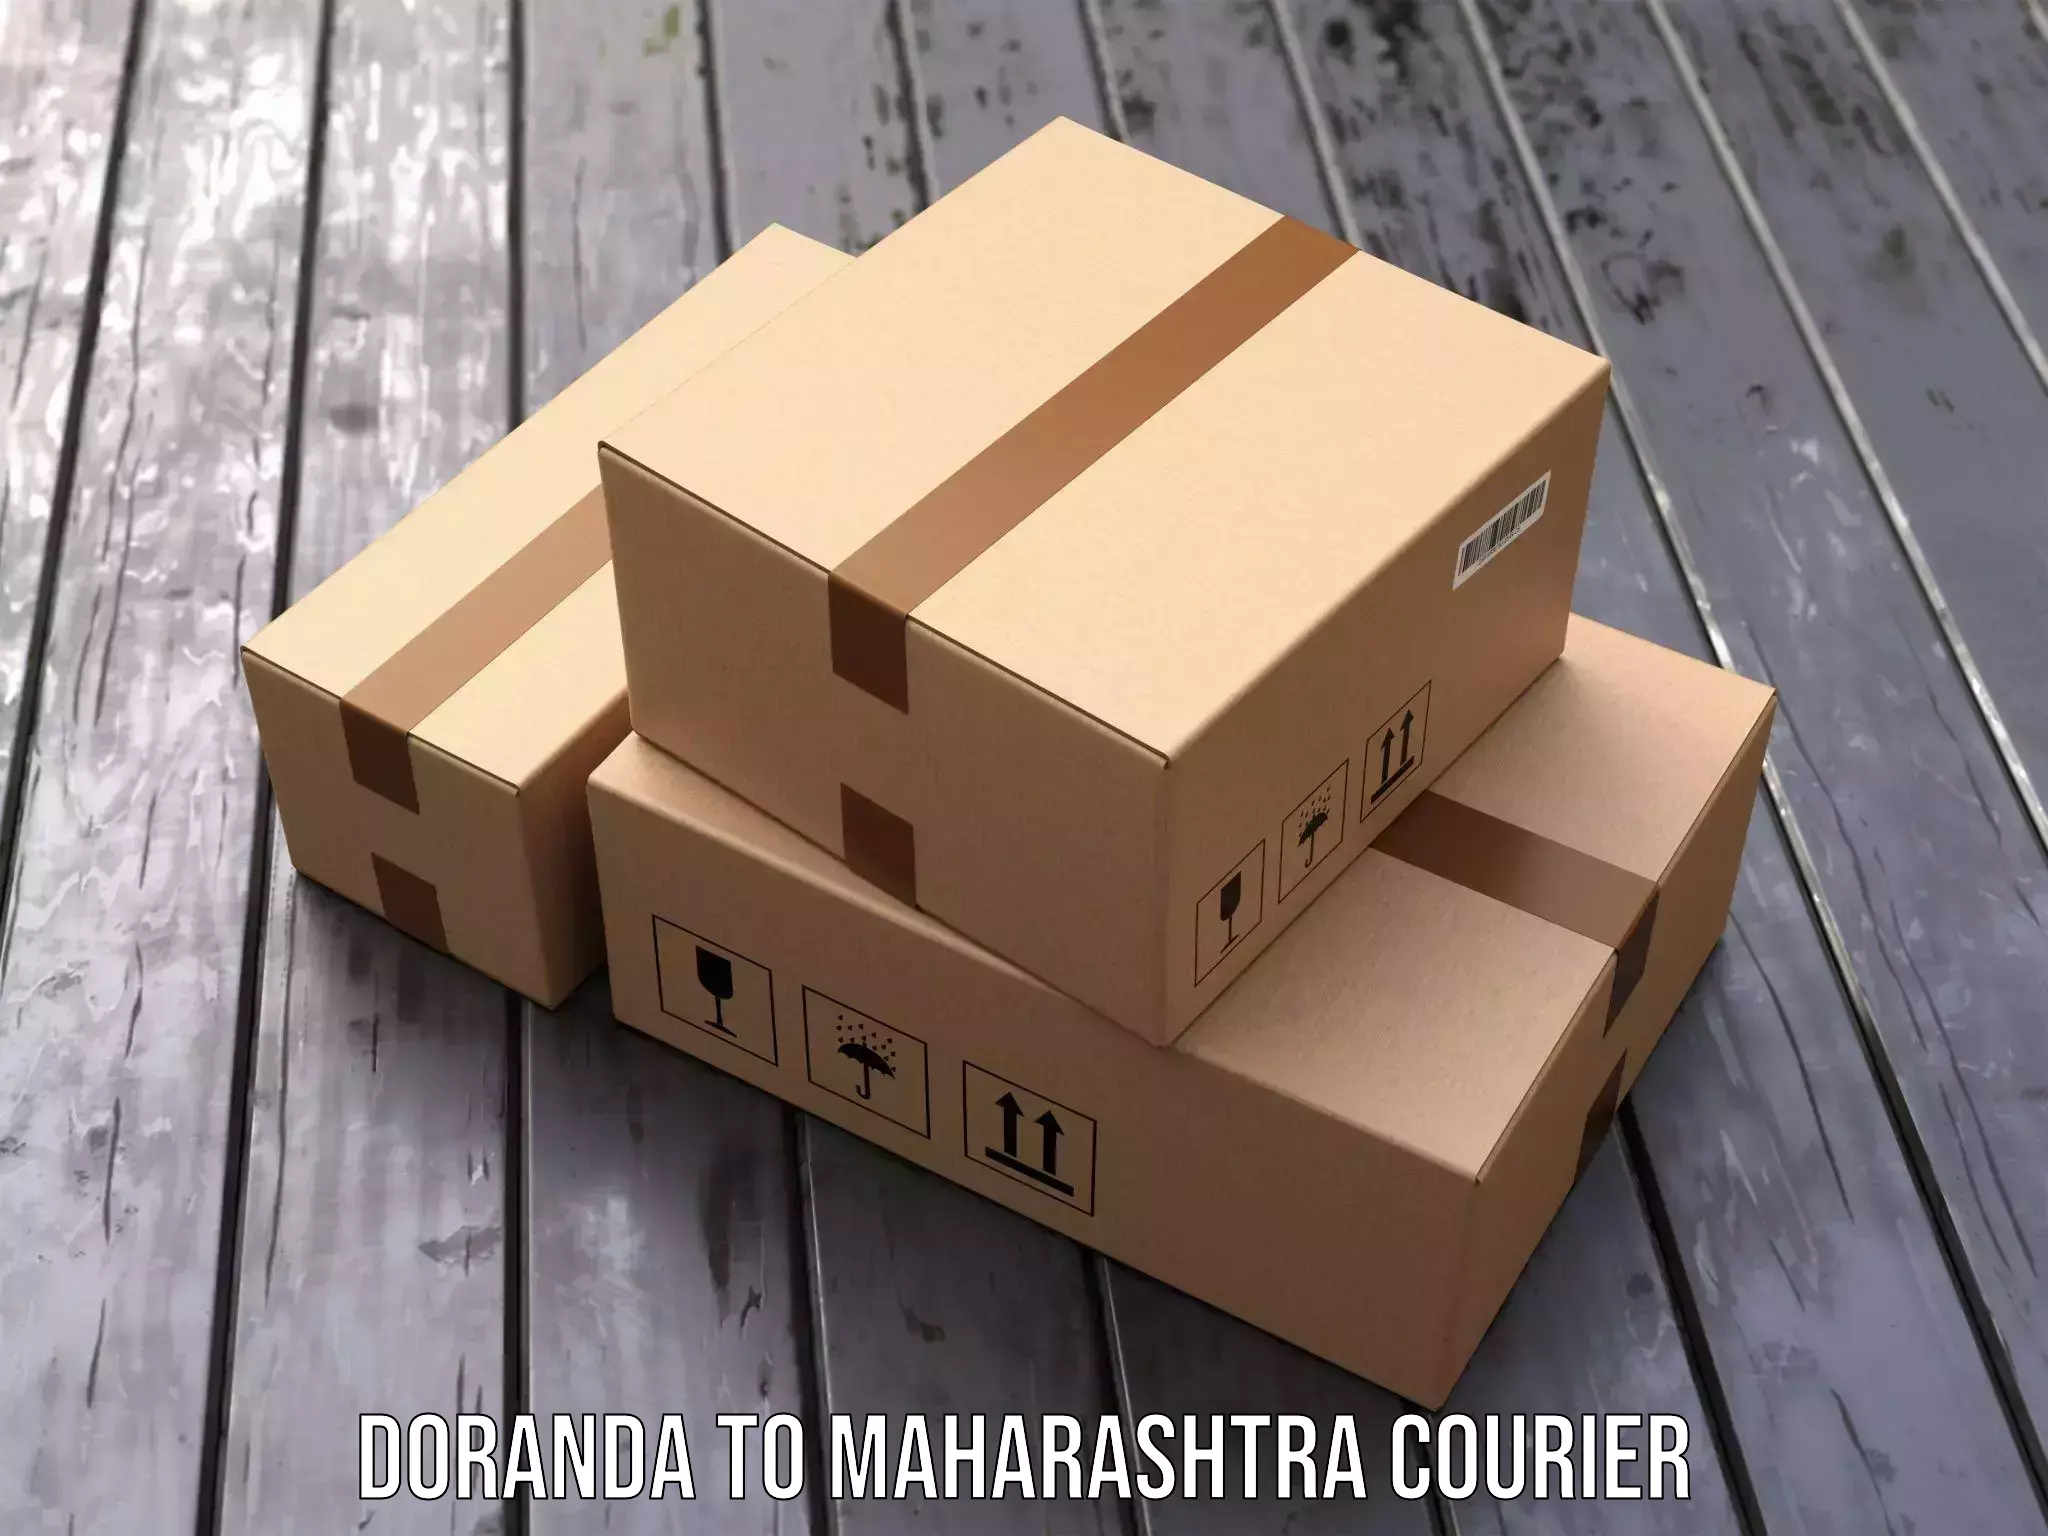 Reliable delivery network Doranda to Ahmednagar